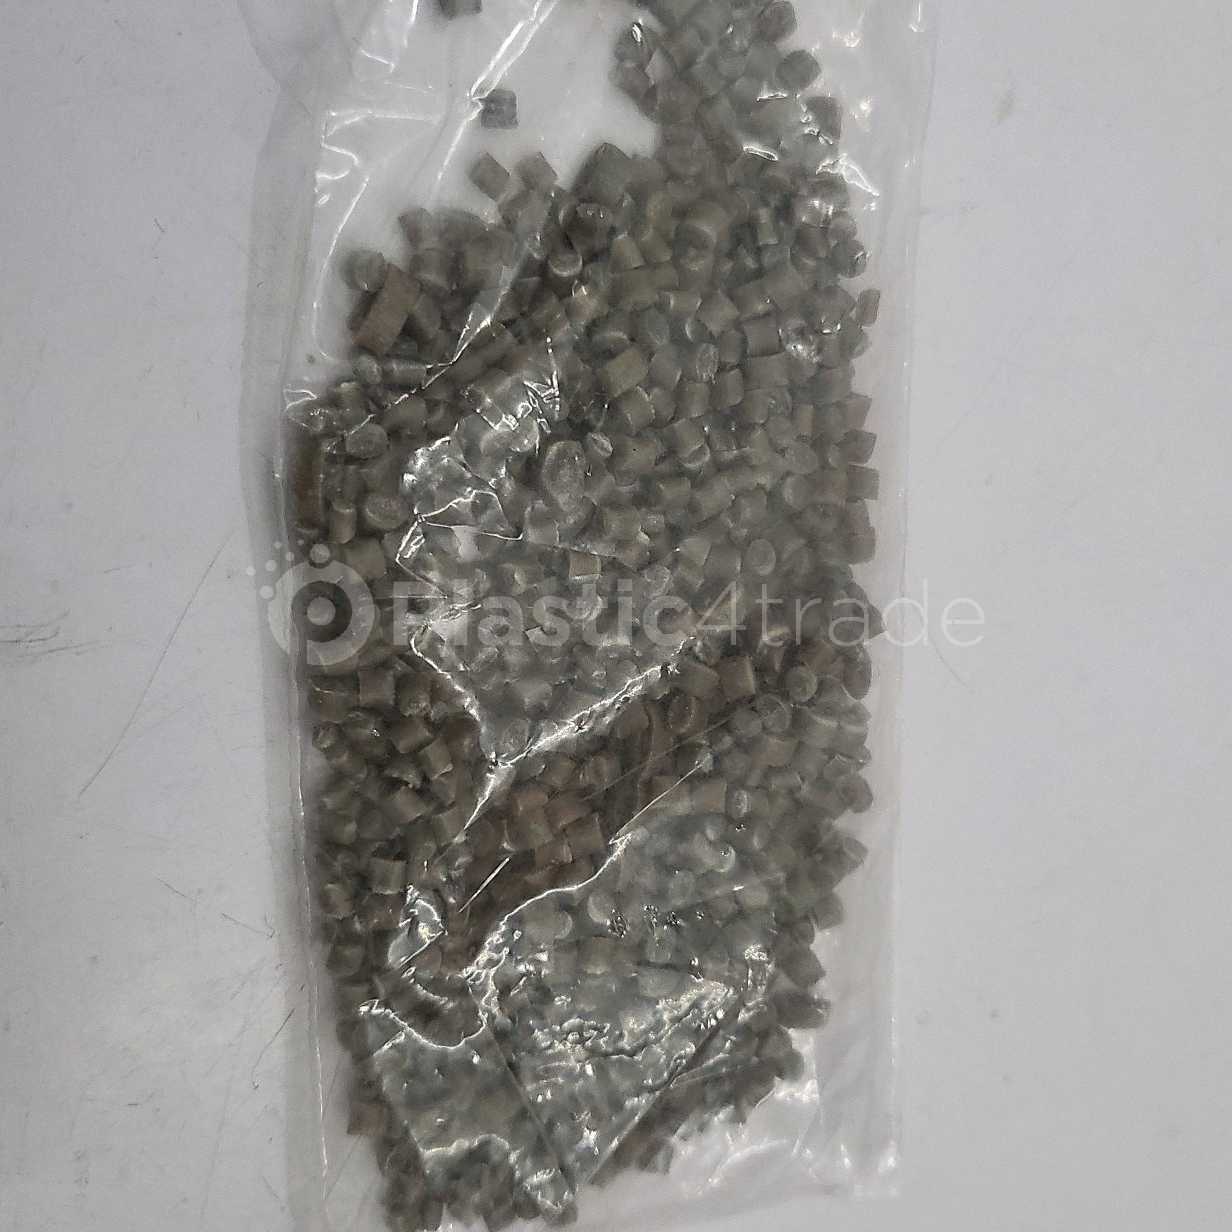 PP GRANULES PP Reprocess Granule Film Grade bihar india Plastic4trade